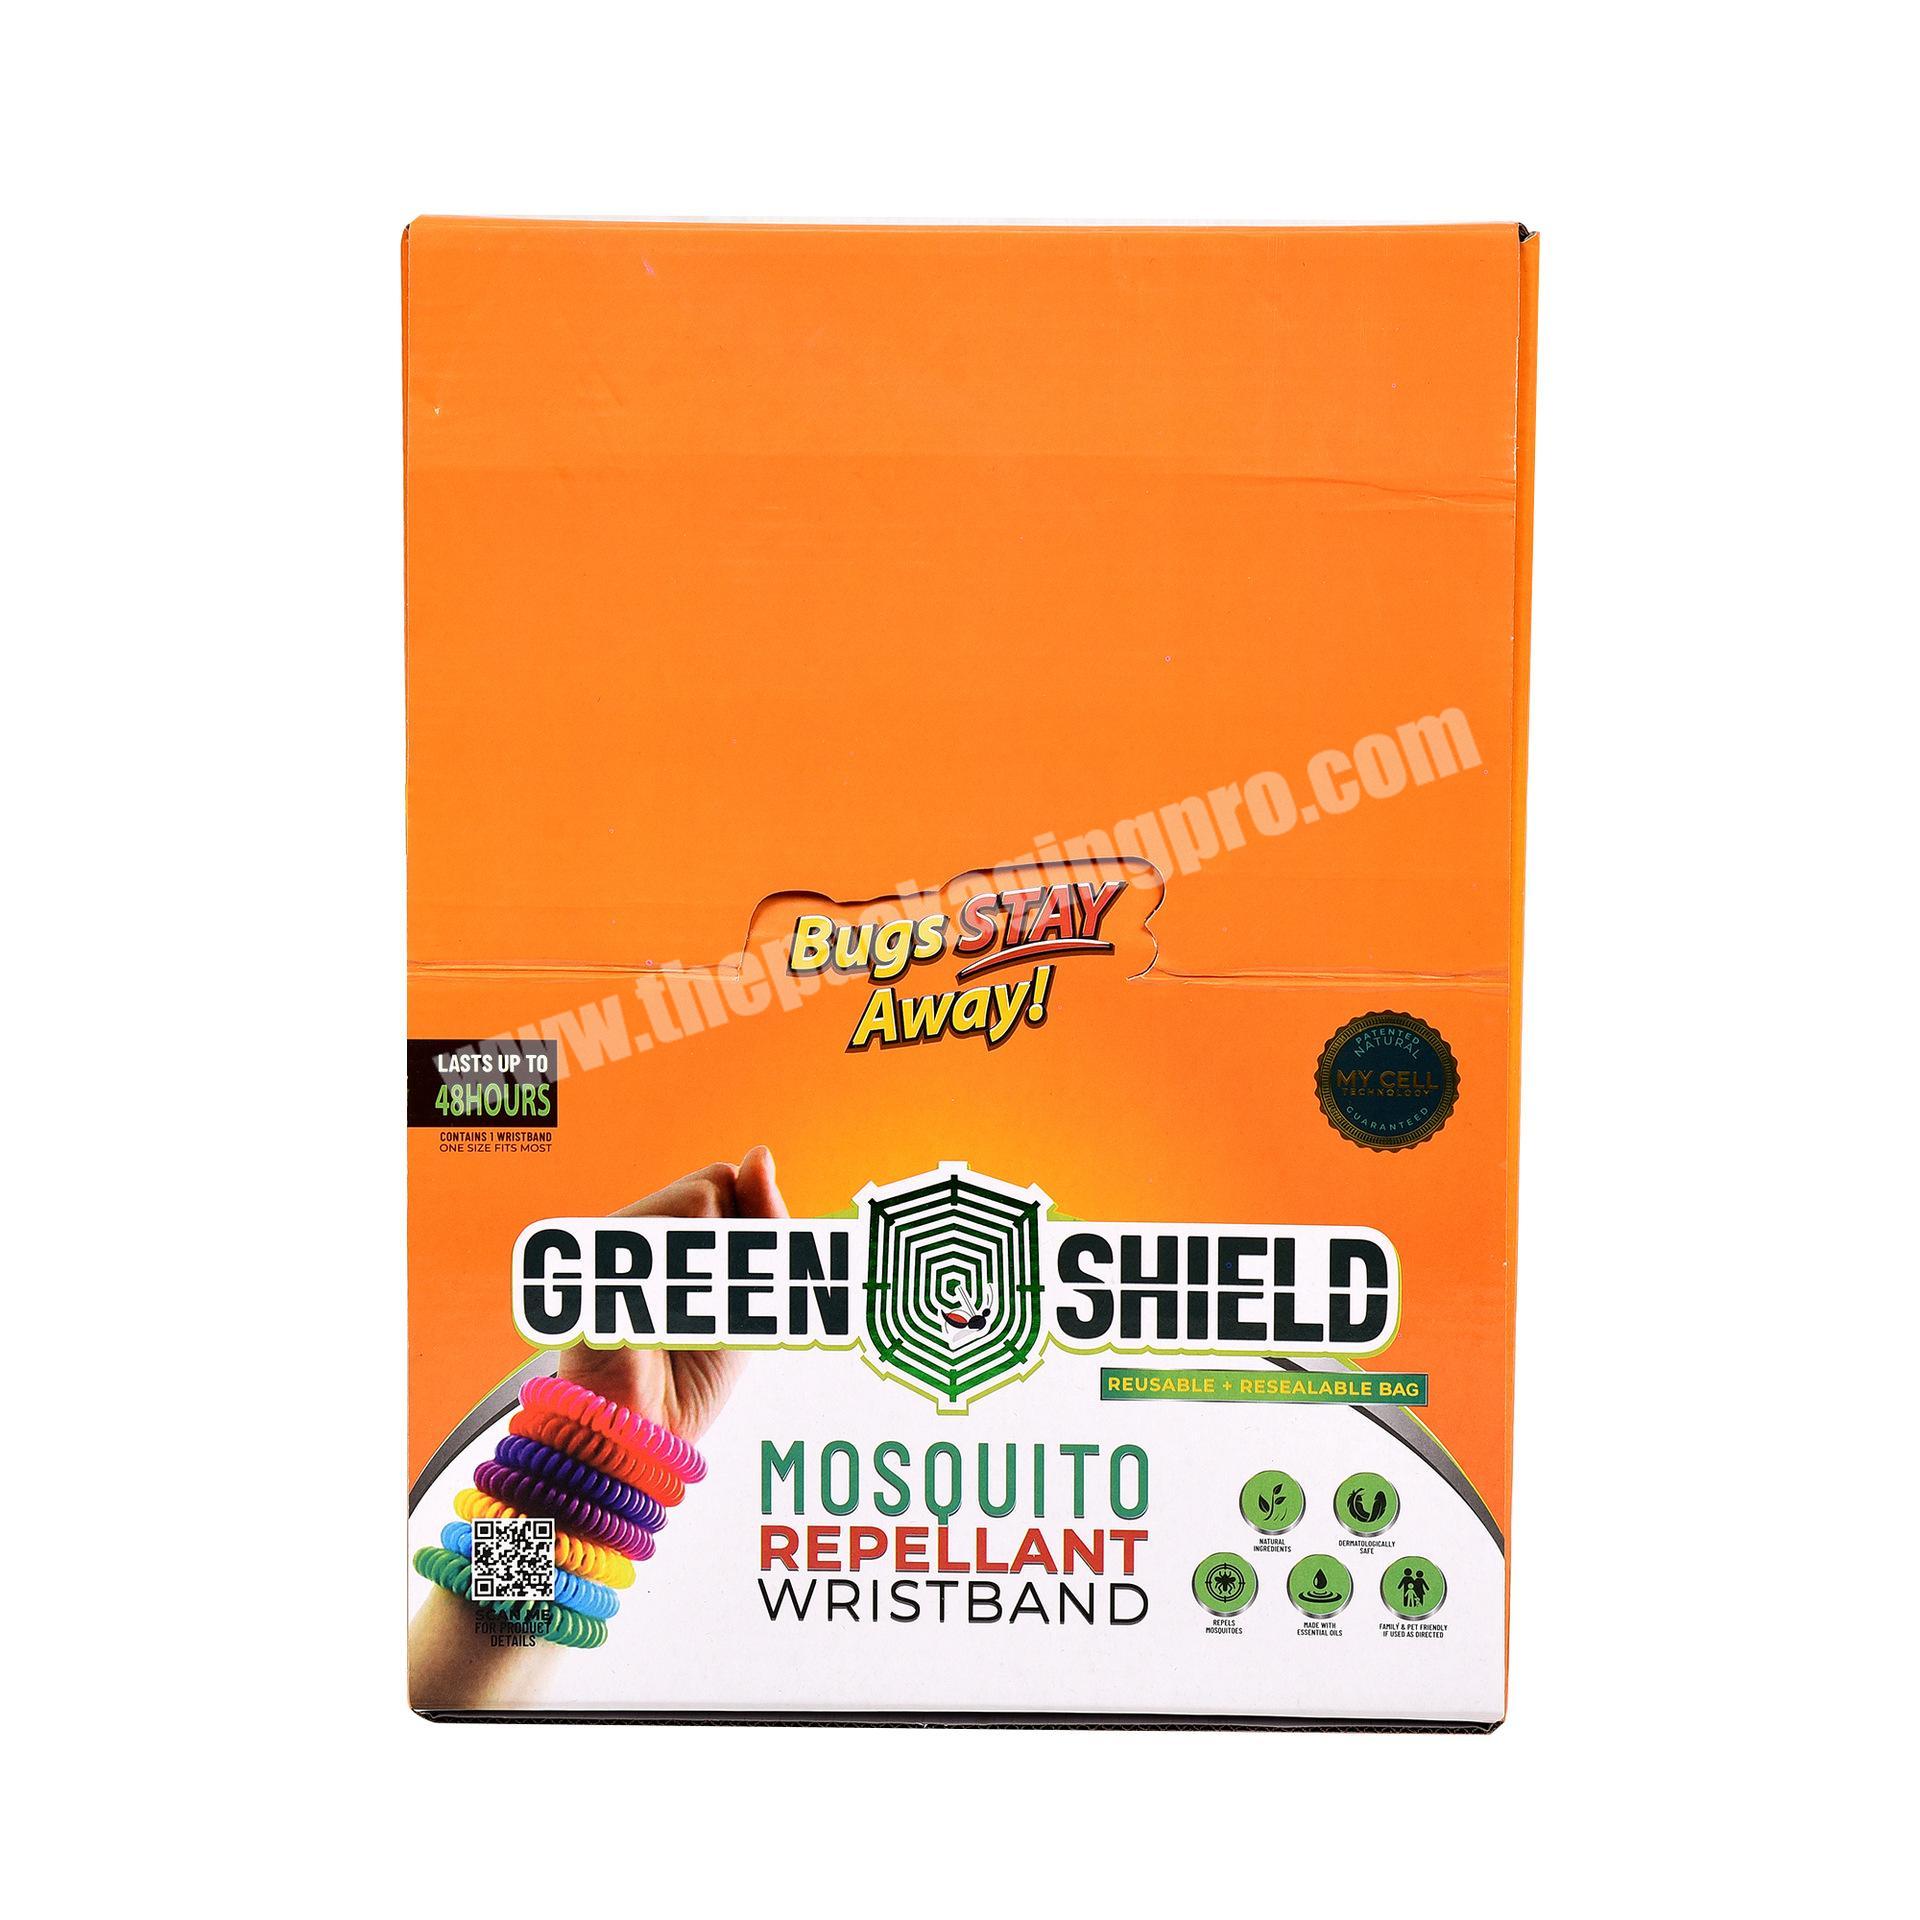 Custom printing nail polish boxes packaging mascara box packaging plain boxes for packiging